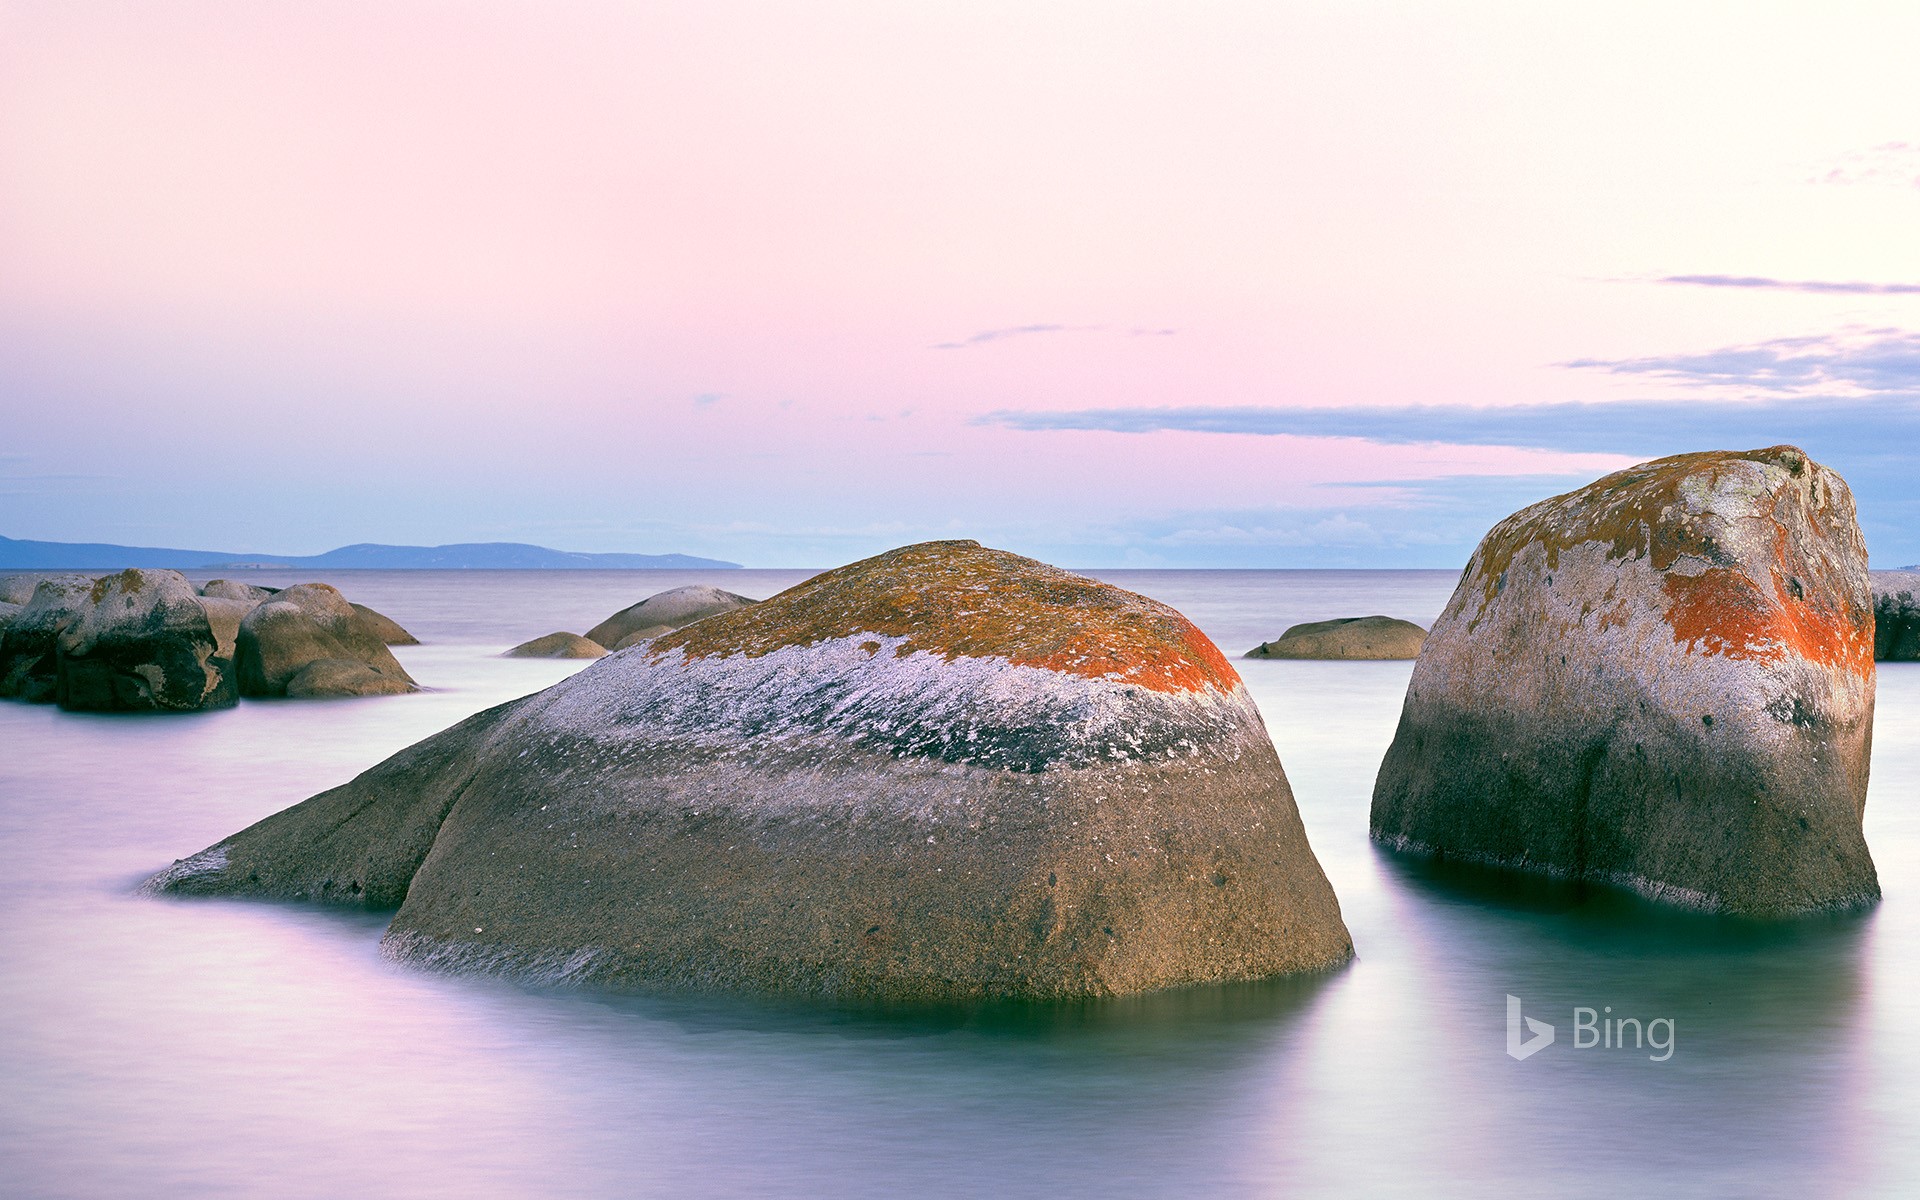 Granite rocks off Flinders Island, Tasmania, Australia